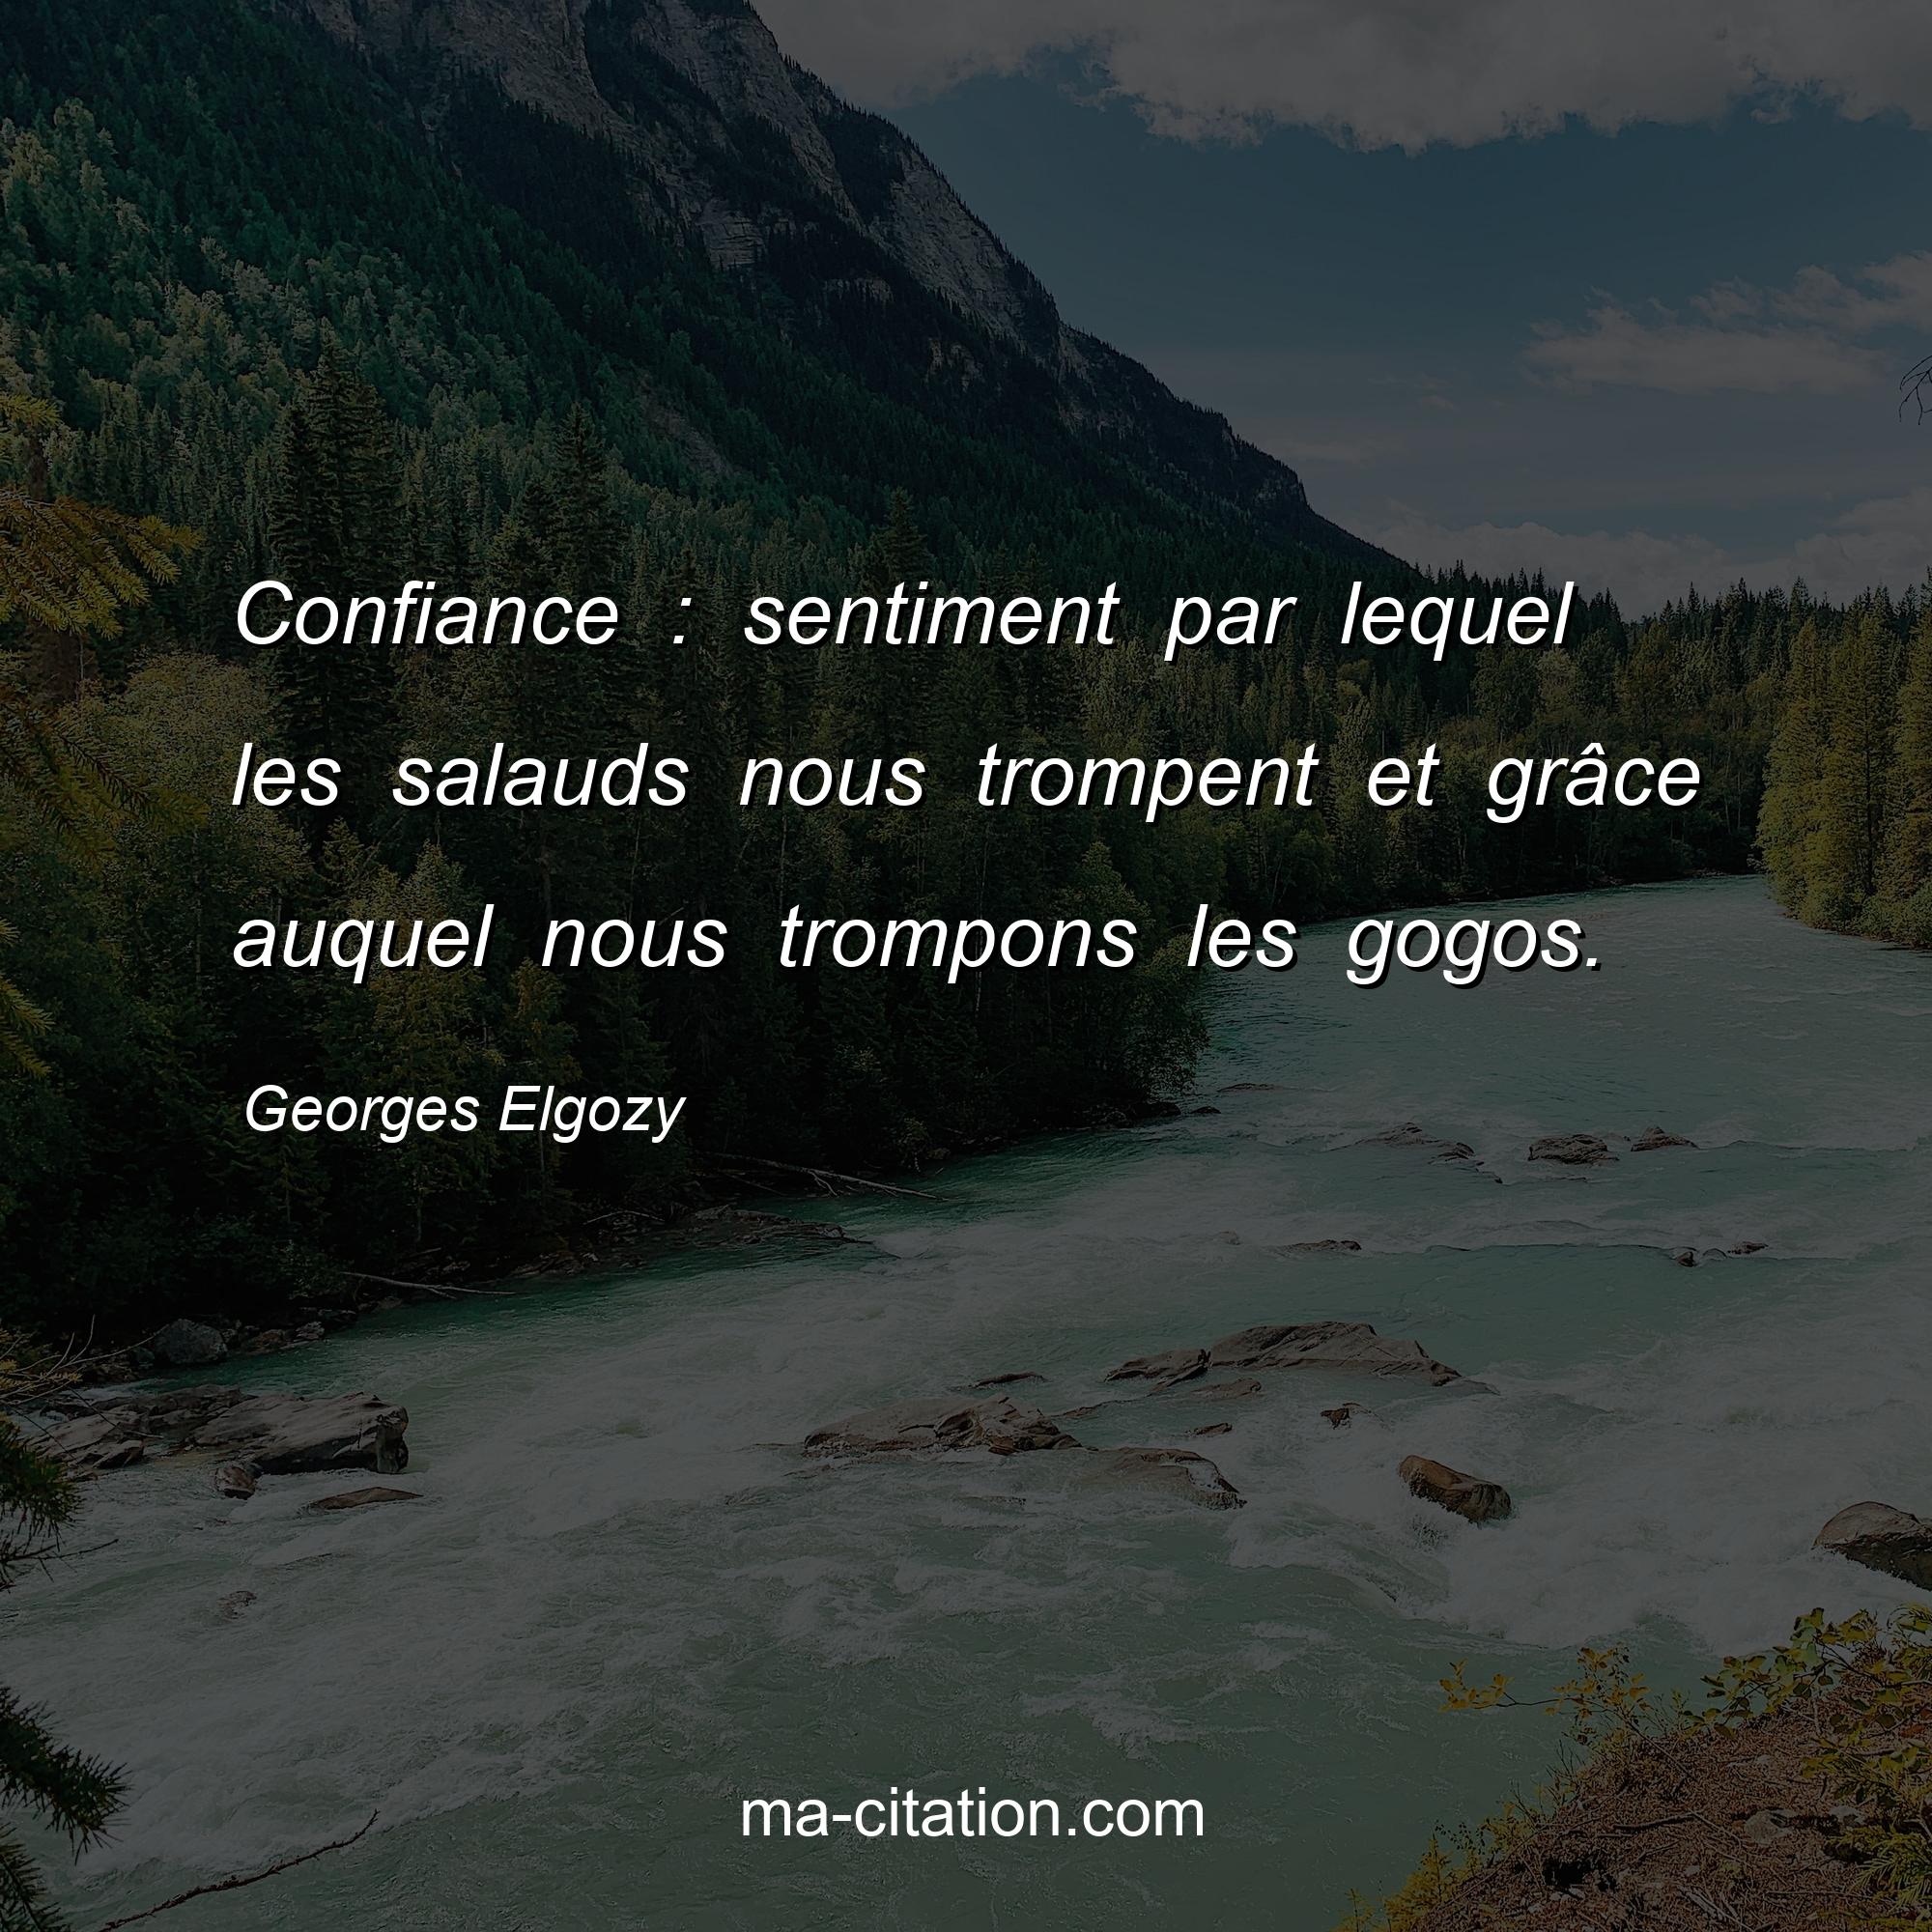 Georges Elgozy : Confiance : sentiment par lequel les salauds nous trompent et grâce auquel nous trompons les gogos.